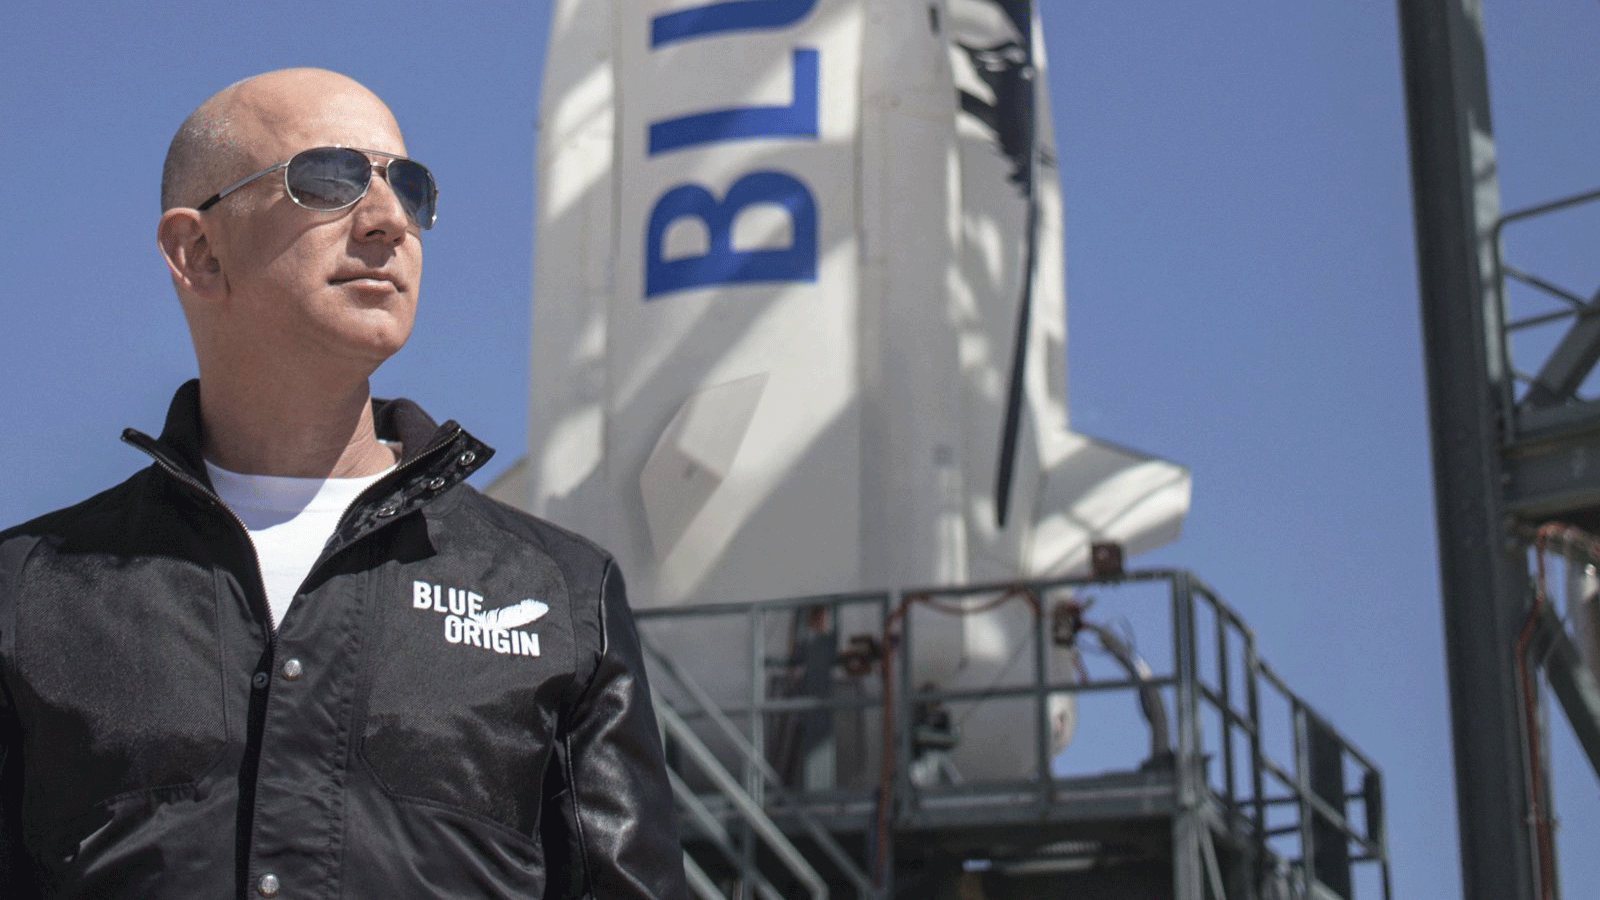 جيف بيزوس ، مؤسس Blue Origin، في منشأة إطلاق New Shepard في غرب تكساس قبل الرحلة الأولى للصاروخ، الولايات المتحدة، 24 نيسان/أبريل 2015